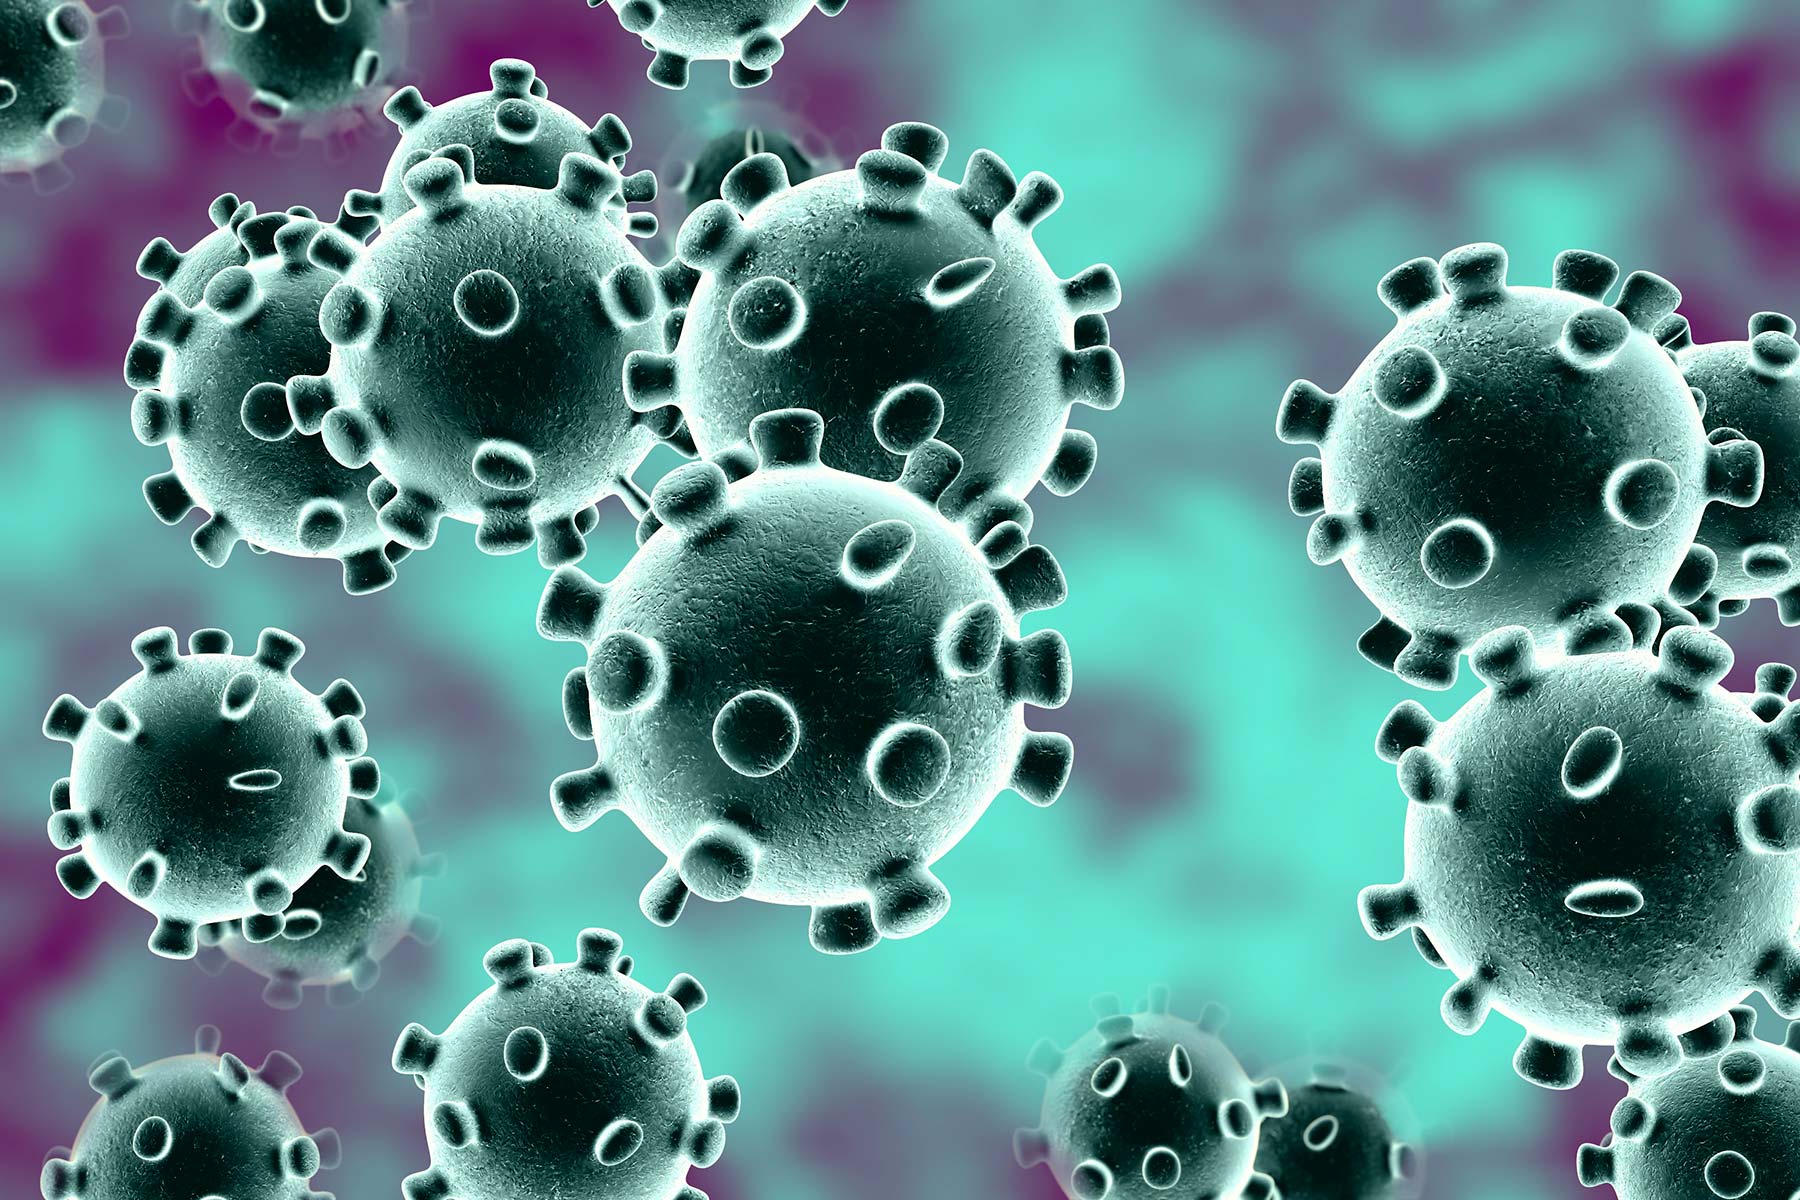   Tin tức y tế thế giới ngày 13/3: Virus Corona có thể sống trên một số bề mặt khoảng 3 ngày trong điều kiện nhất định  